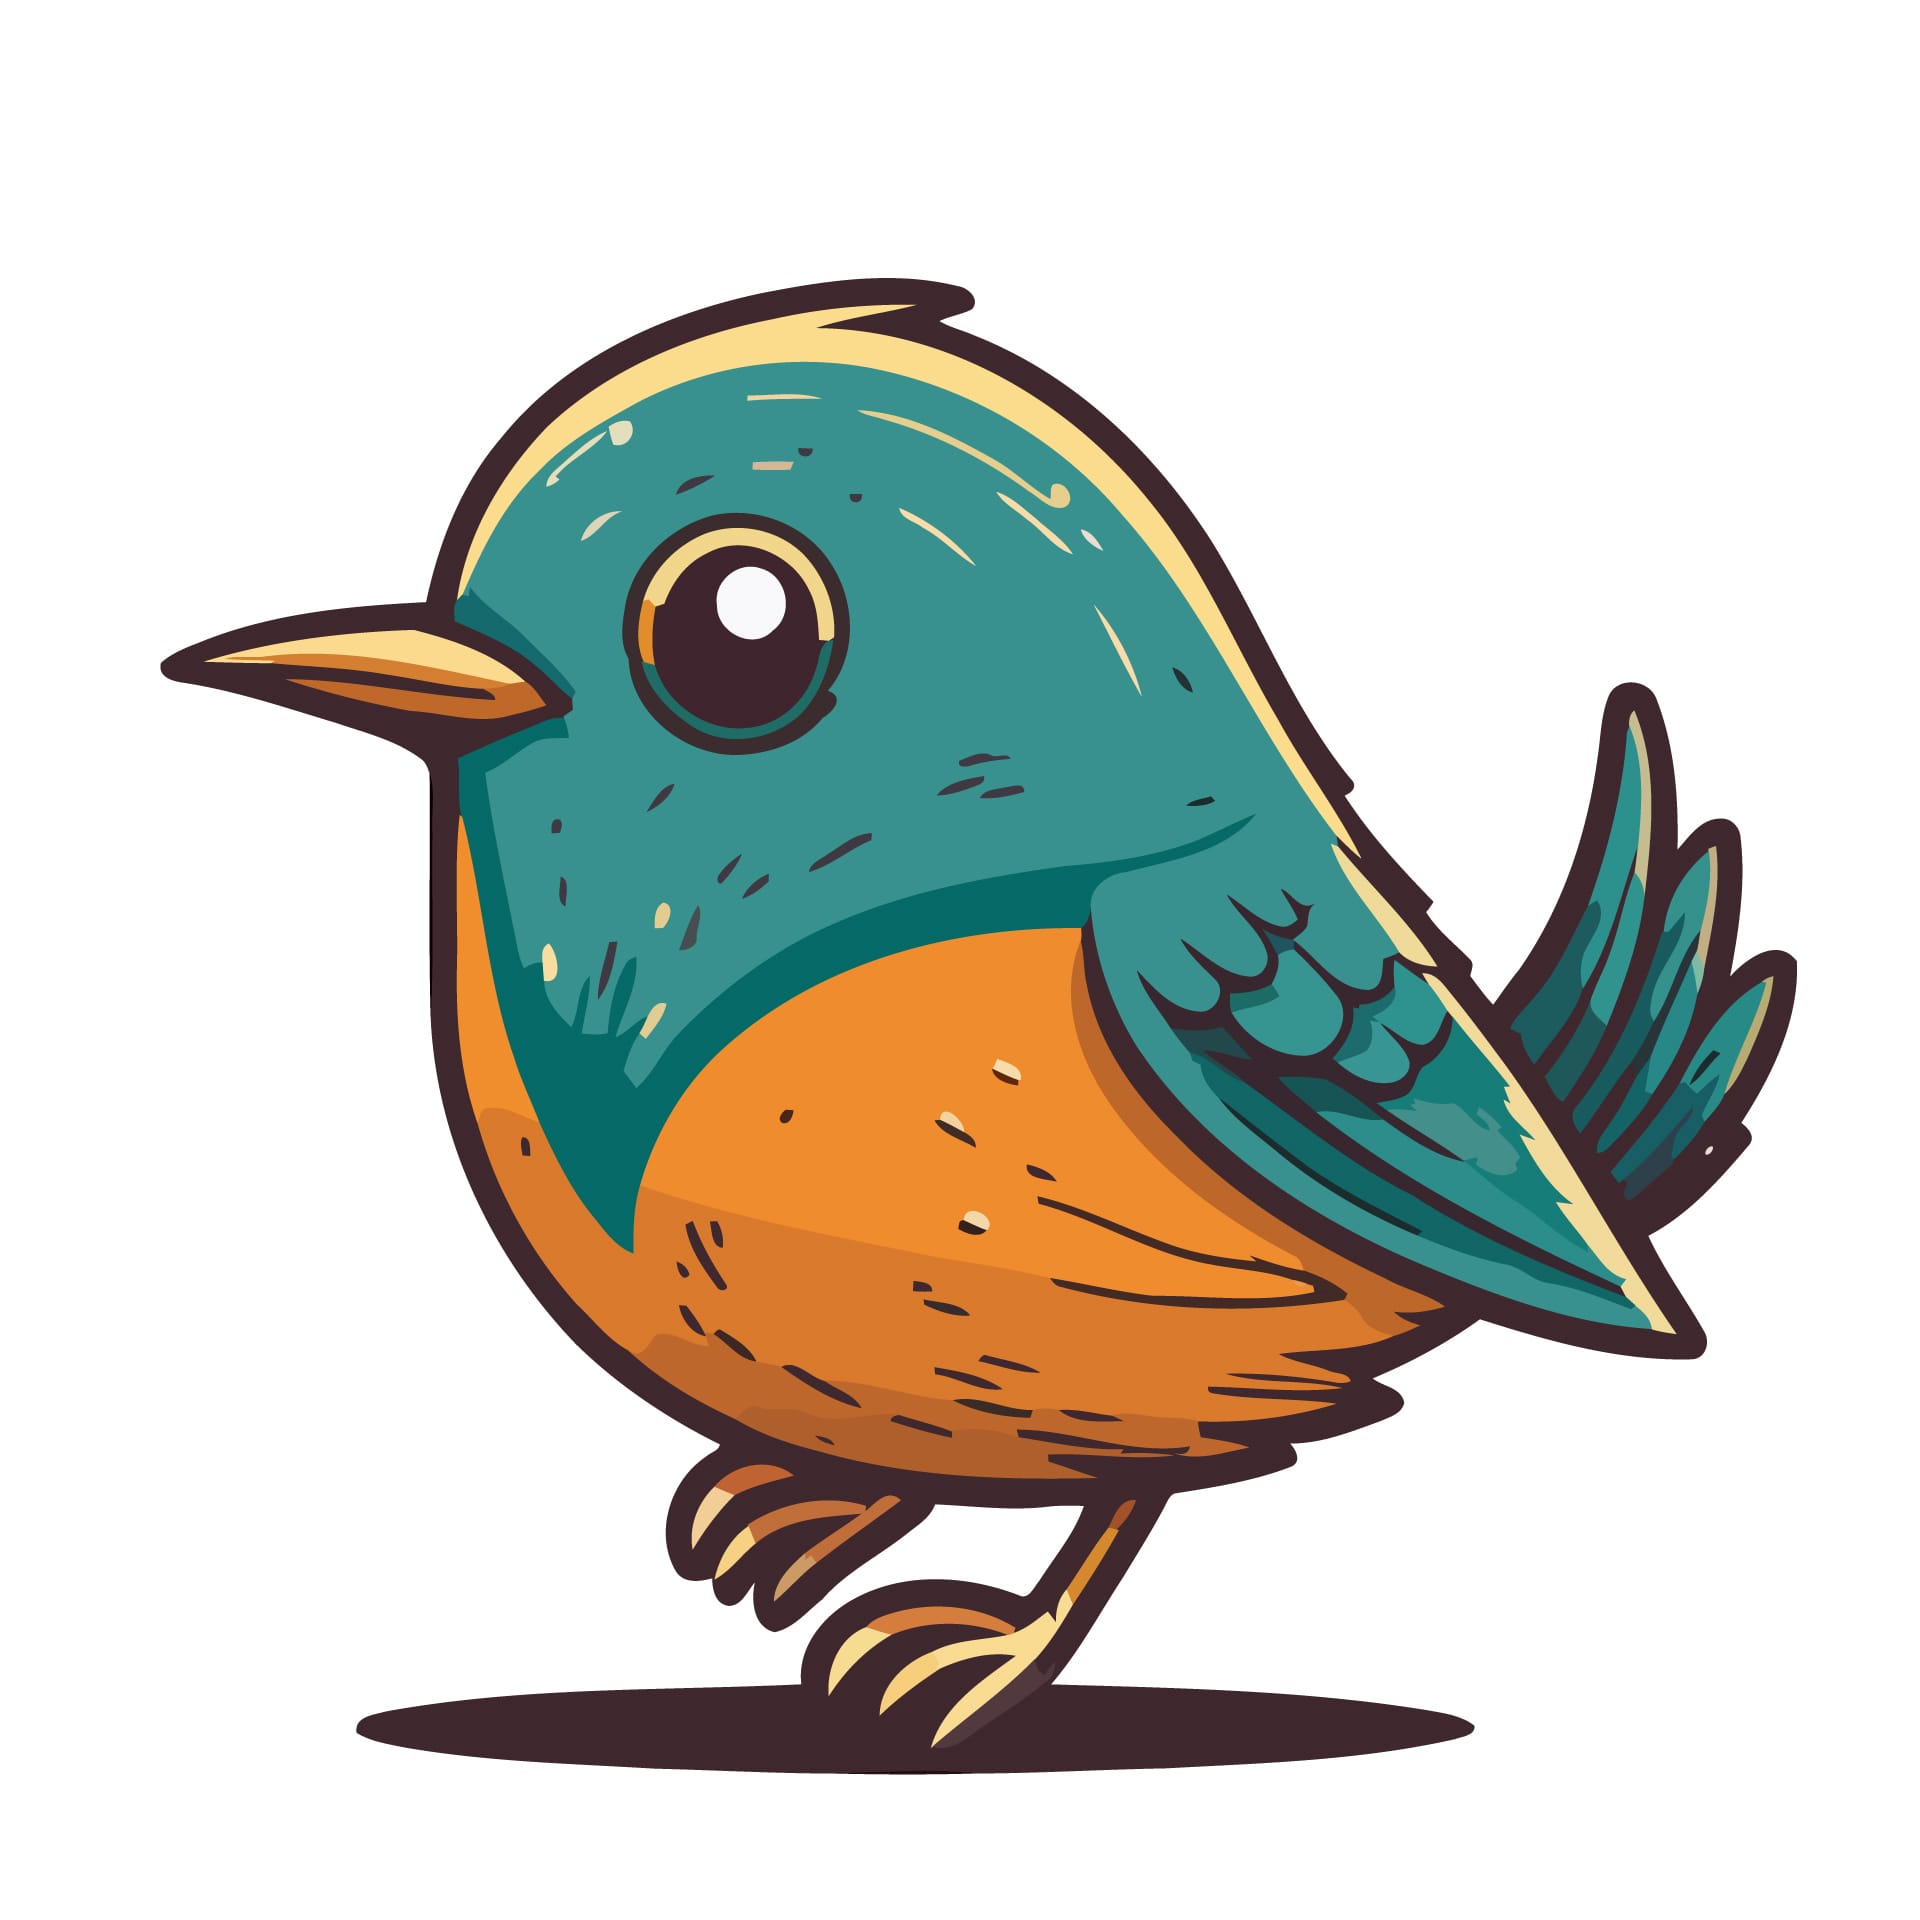 Cute little bird cartoon animal illustration logo mascot icon